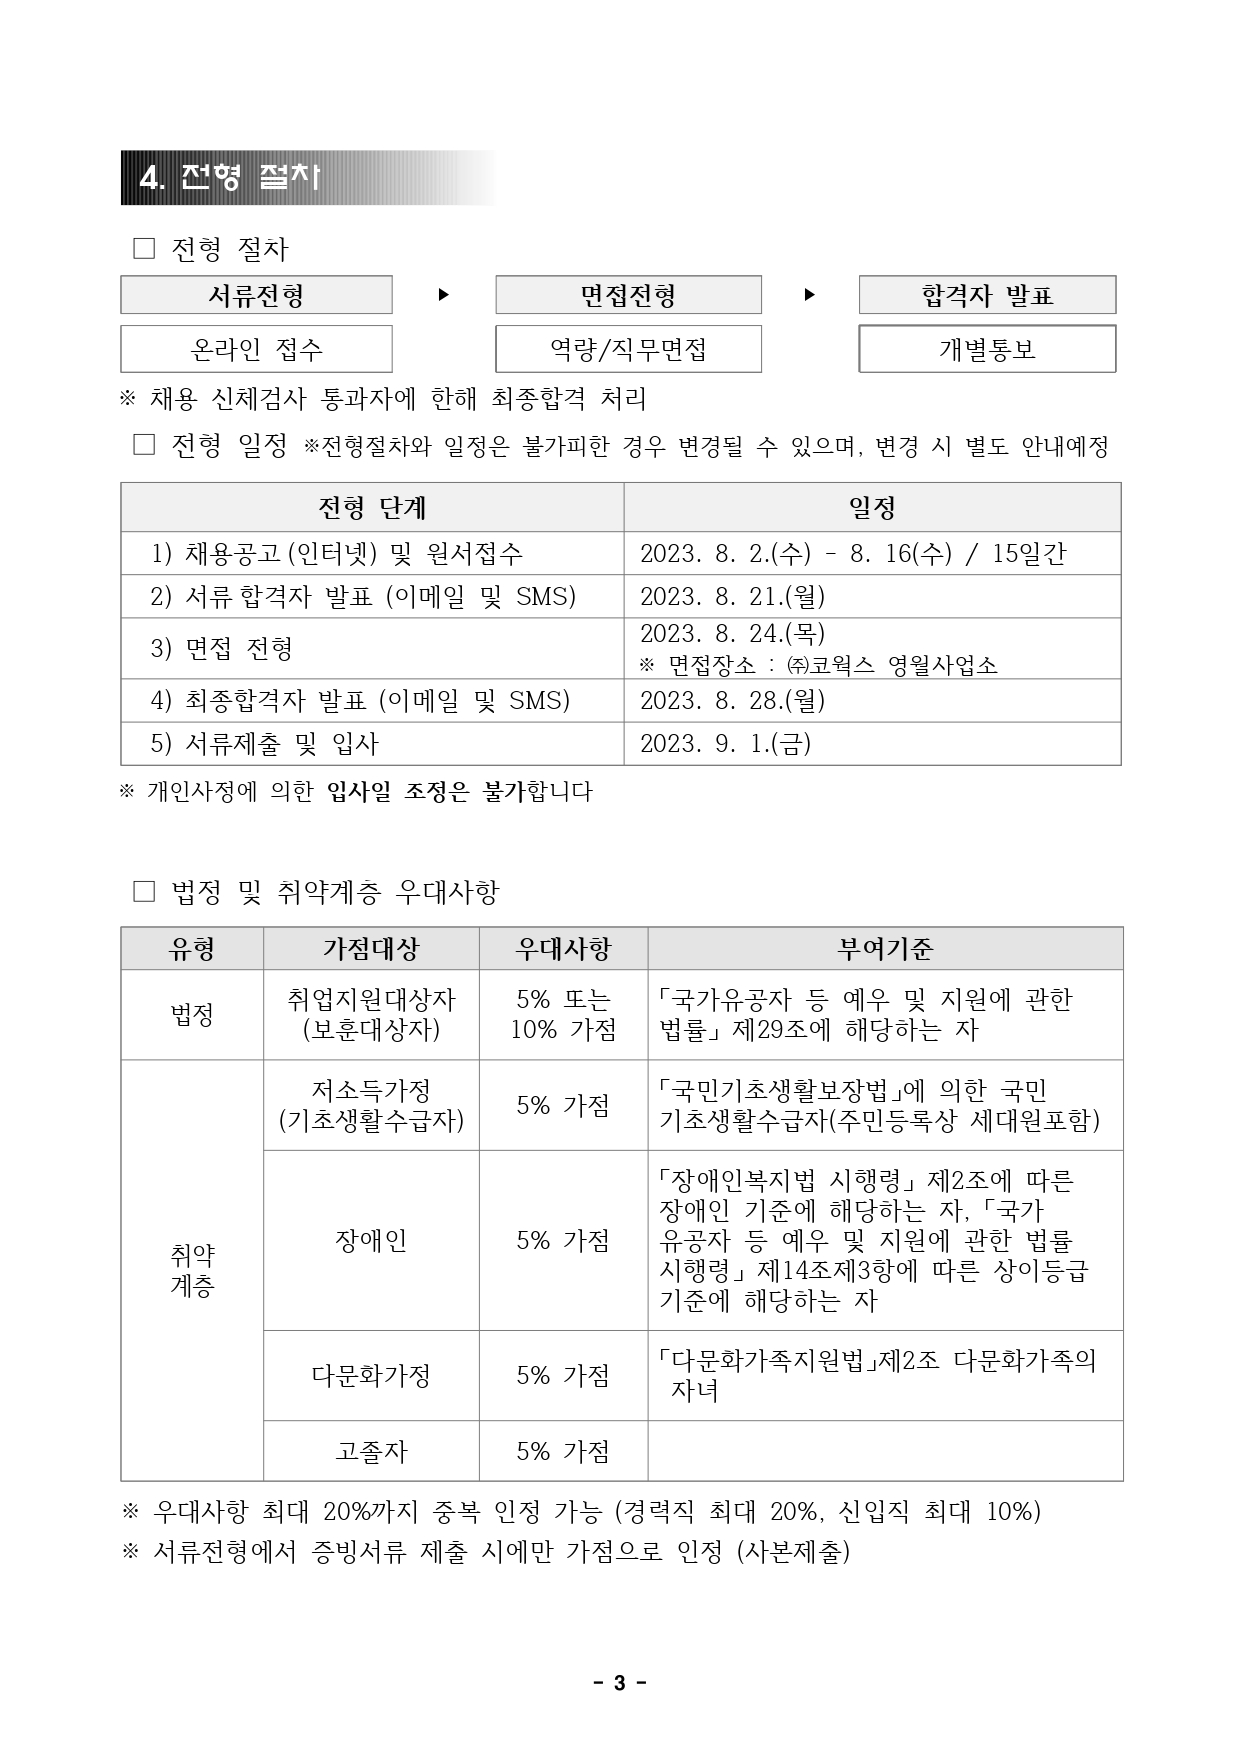 붙임. (주)코웍스 직원채용 공고문(교육운영-간호사(영월))_최종_page-0003.jpg